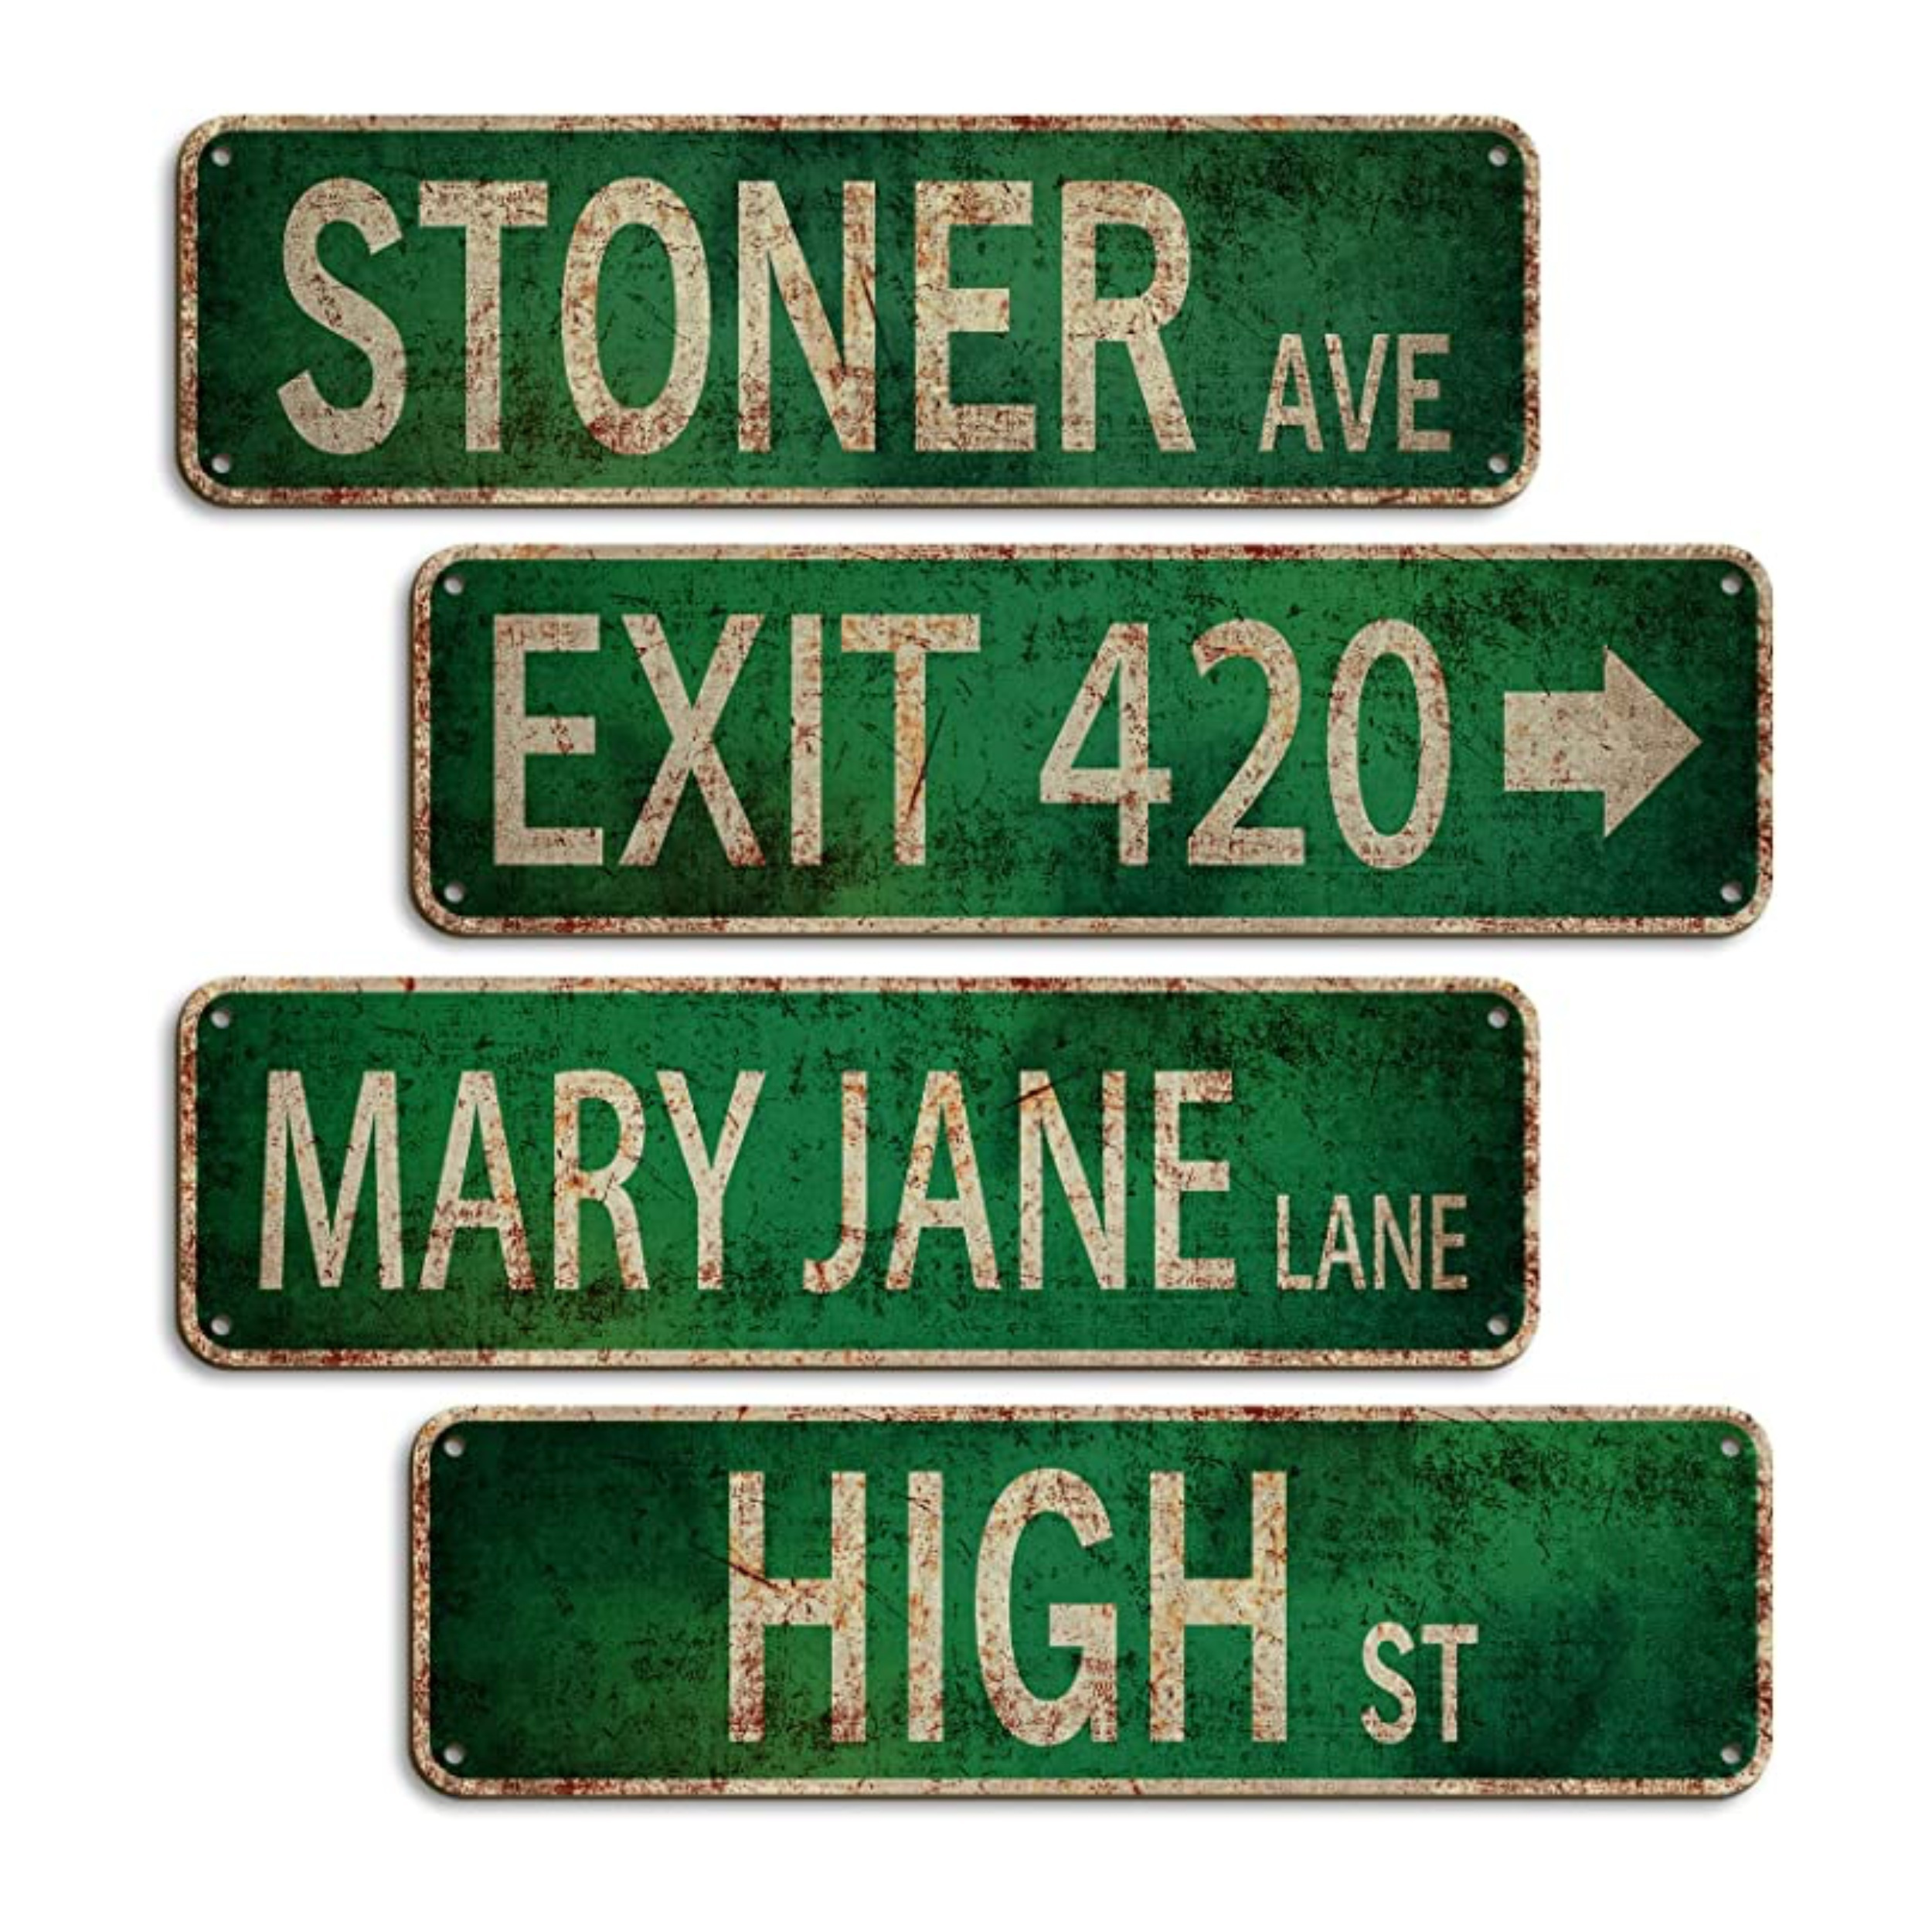 

4 Street Signs Of Stoner Avenue - Vintage Metal Tin Sign Decor For Home, Restaurant, Bar, Cafe, Garage & More!